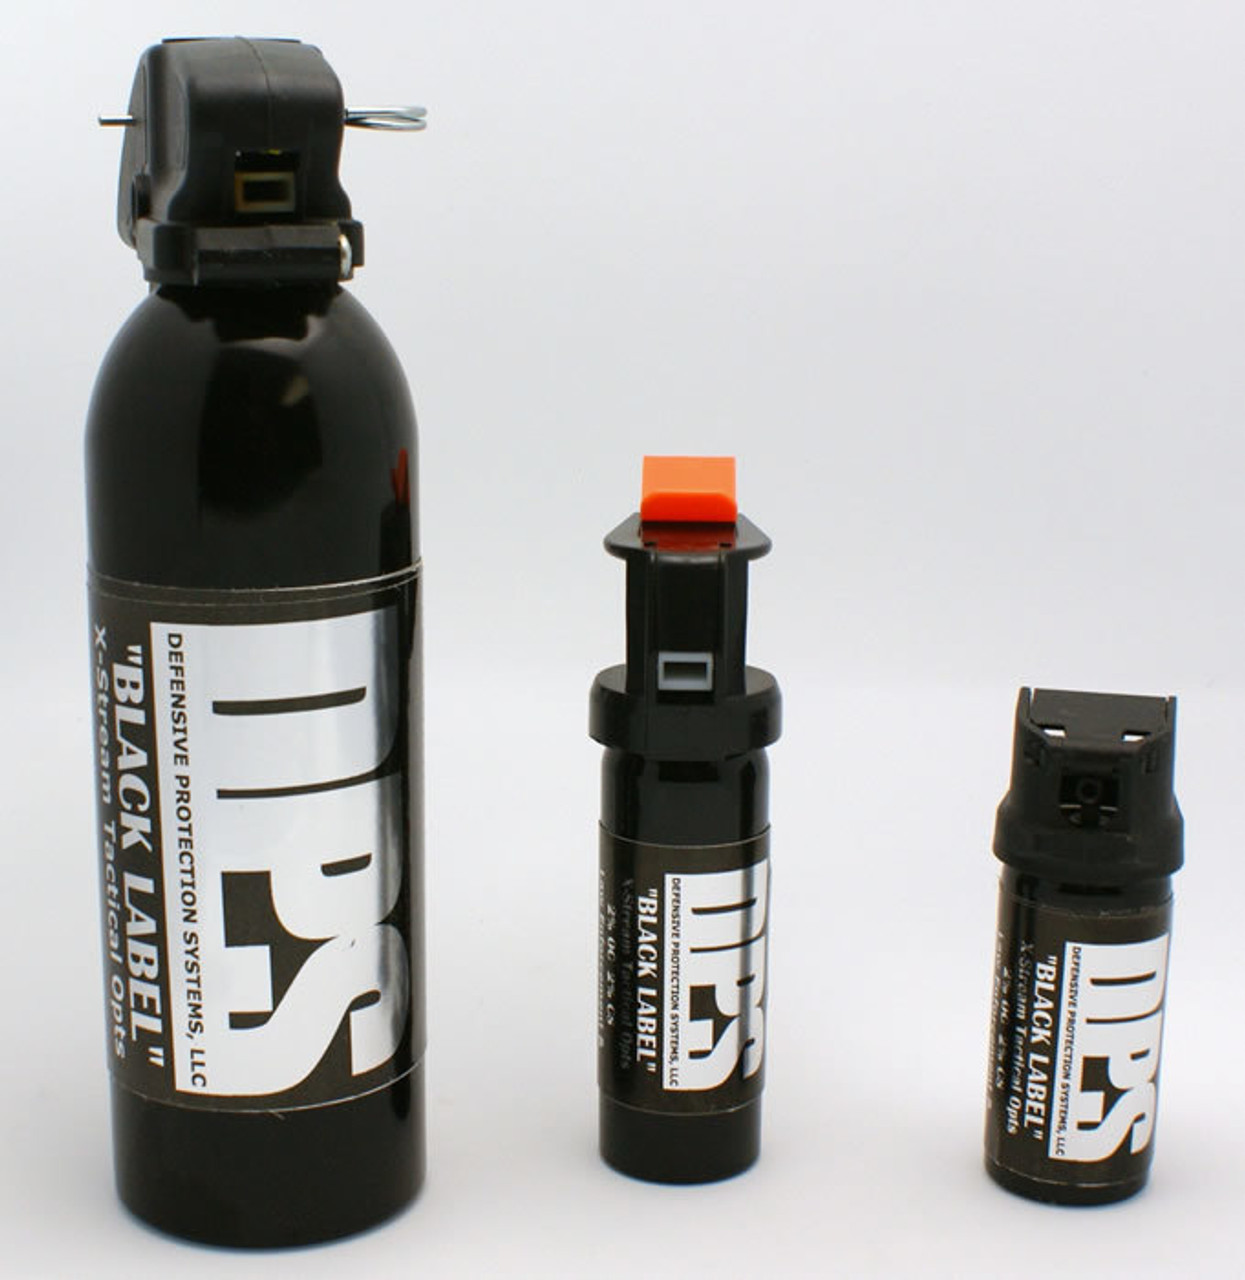 Jogger Fogger Defense Pepper Spray Kit